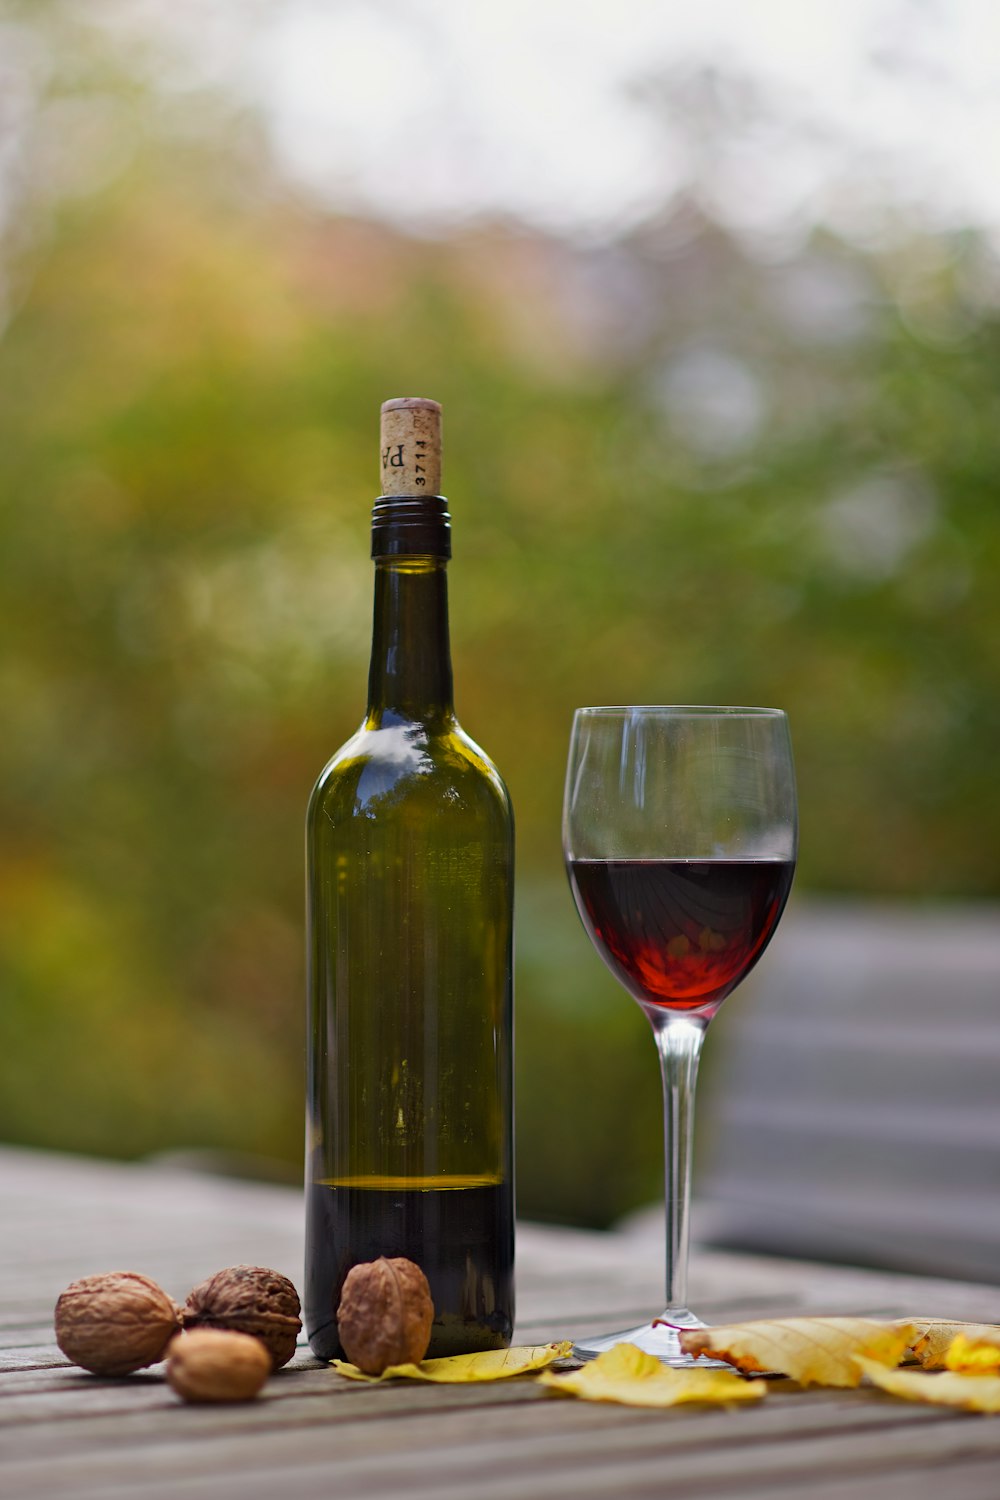 bouteille de vin à côté du verre à vin sur une surface en bois brun